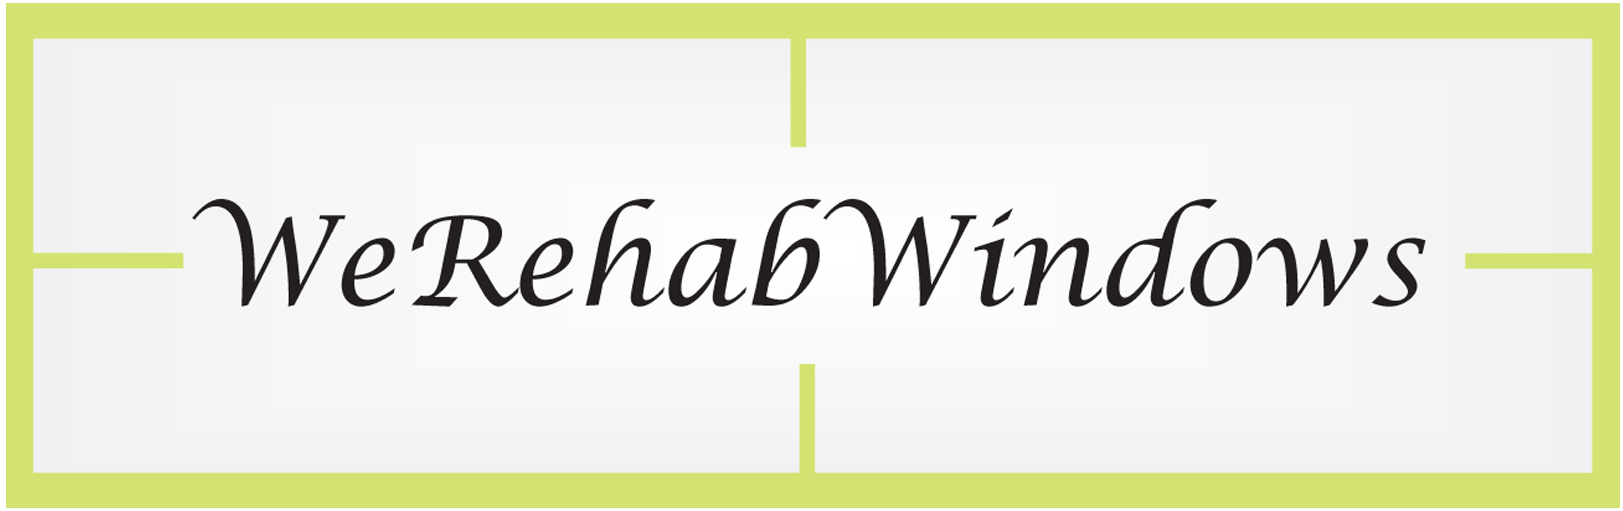 We Rehab Windows Logo